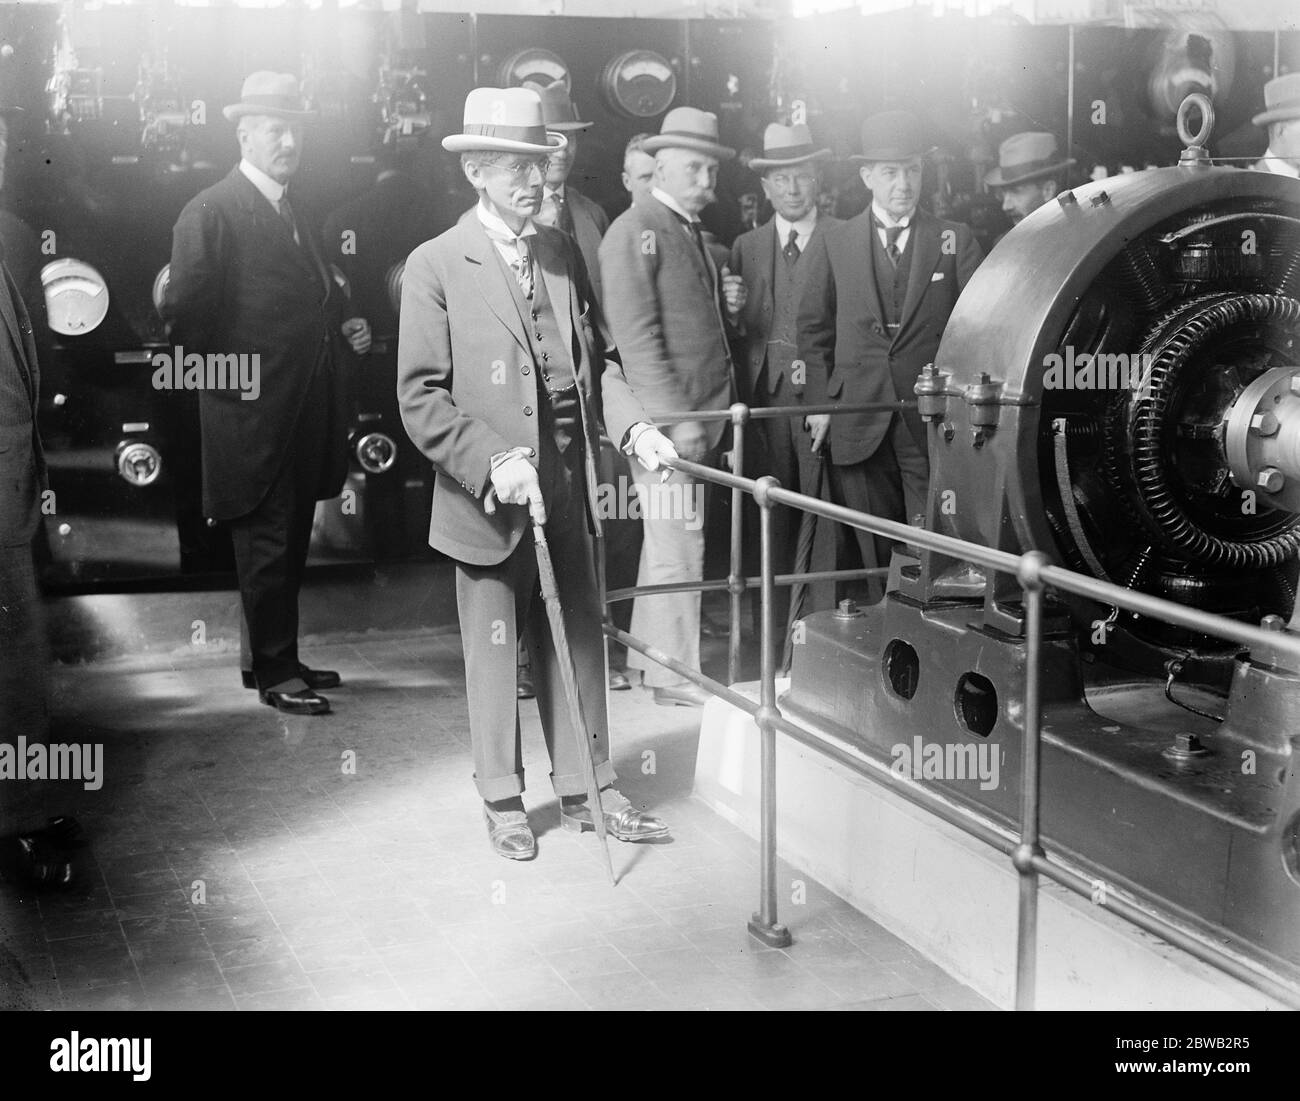 Relier l'Empire par la chaîne sans fil M. Kellaway le ministre des postes a ouvert jeudi la première station de la chaîne sans fil impériale à Leafield près d'Oxford, voici l'un des grands isolants du 18 août 1921 Banque D'Images